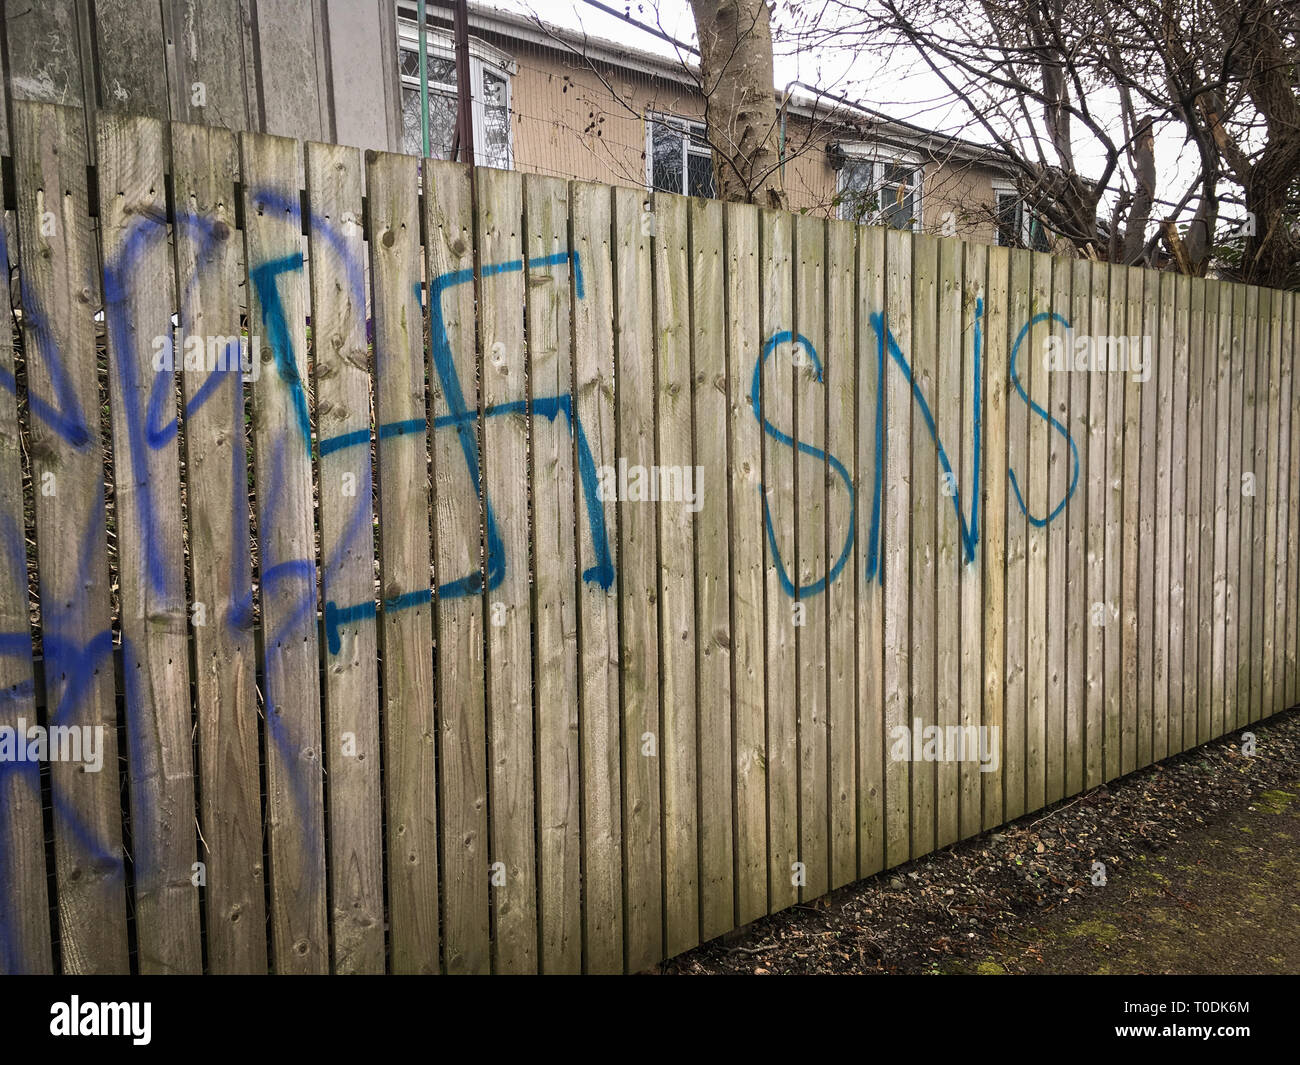 Rassistische Graffiti, anti-muslimischen Graffiti am Fluss Clyde in Glasgow, Schottland, 3. März 2019. Stockfoto